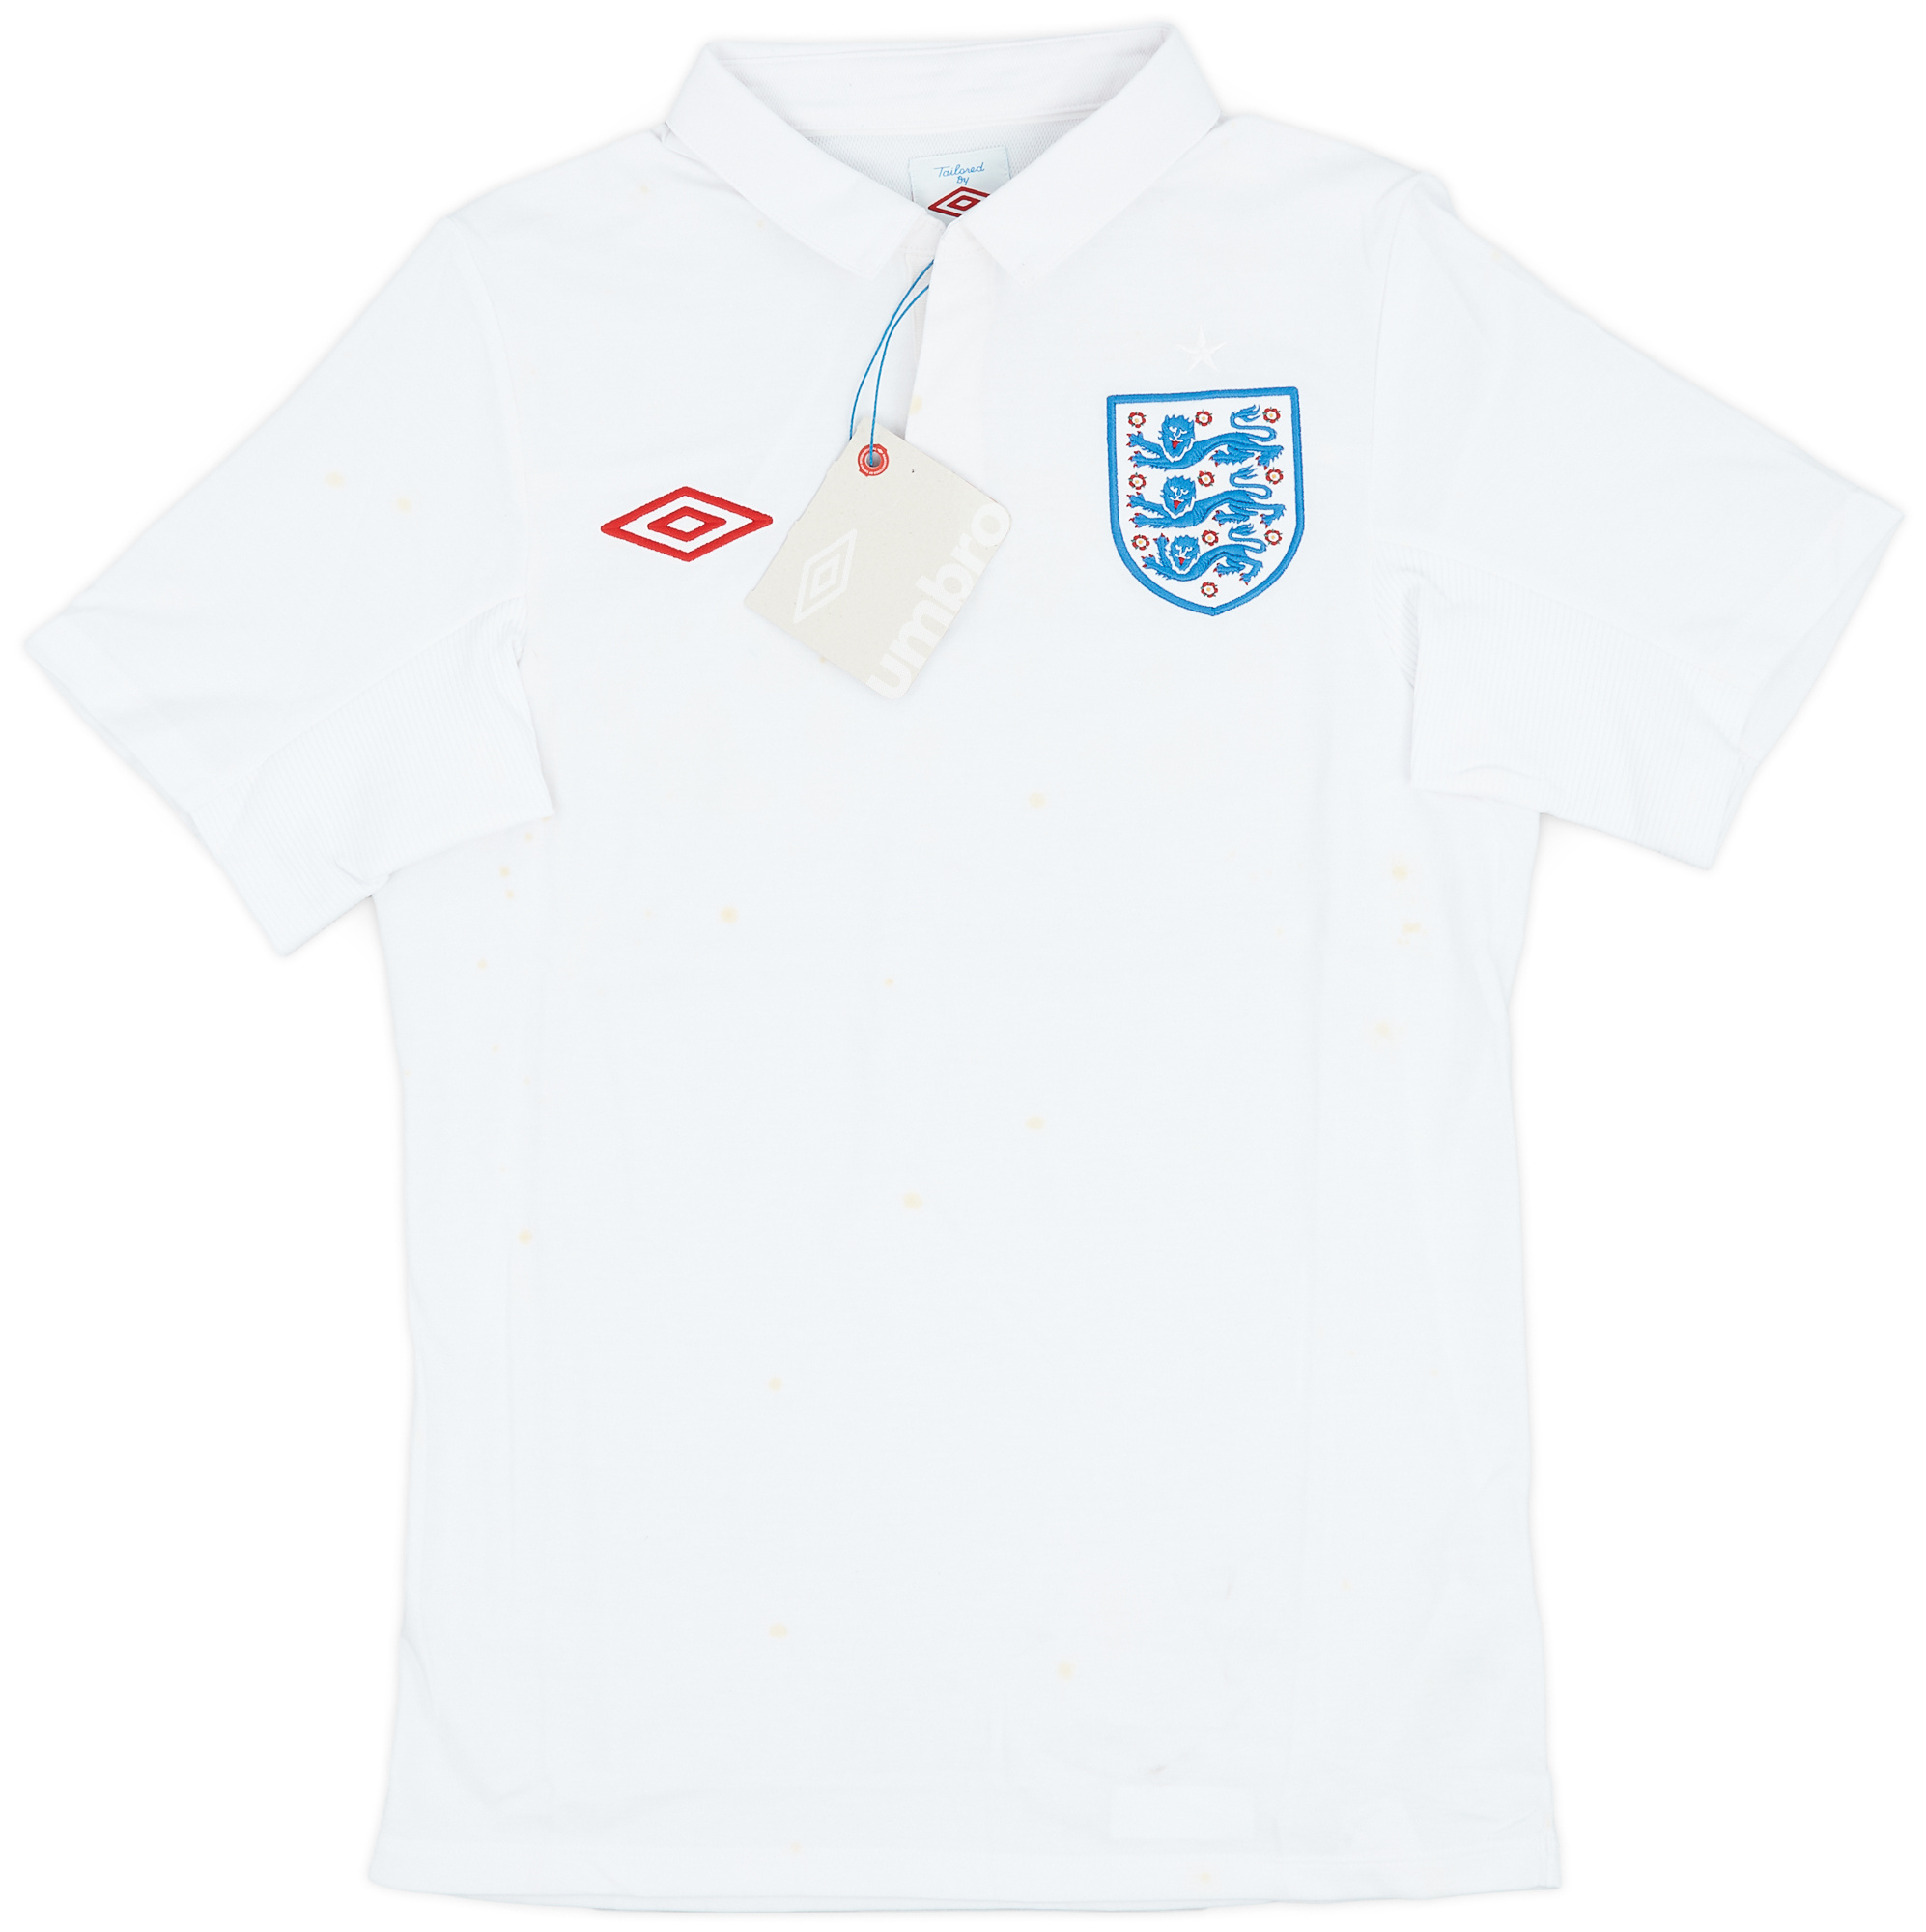 2009-10 England Home Shirt ()